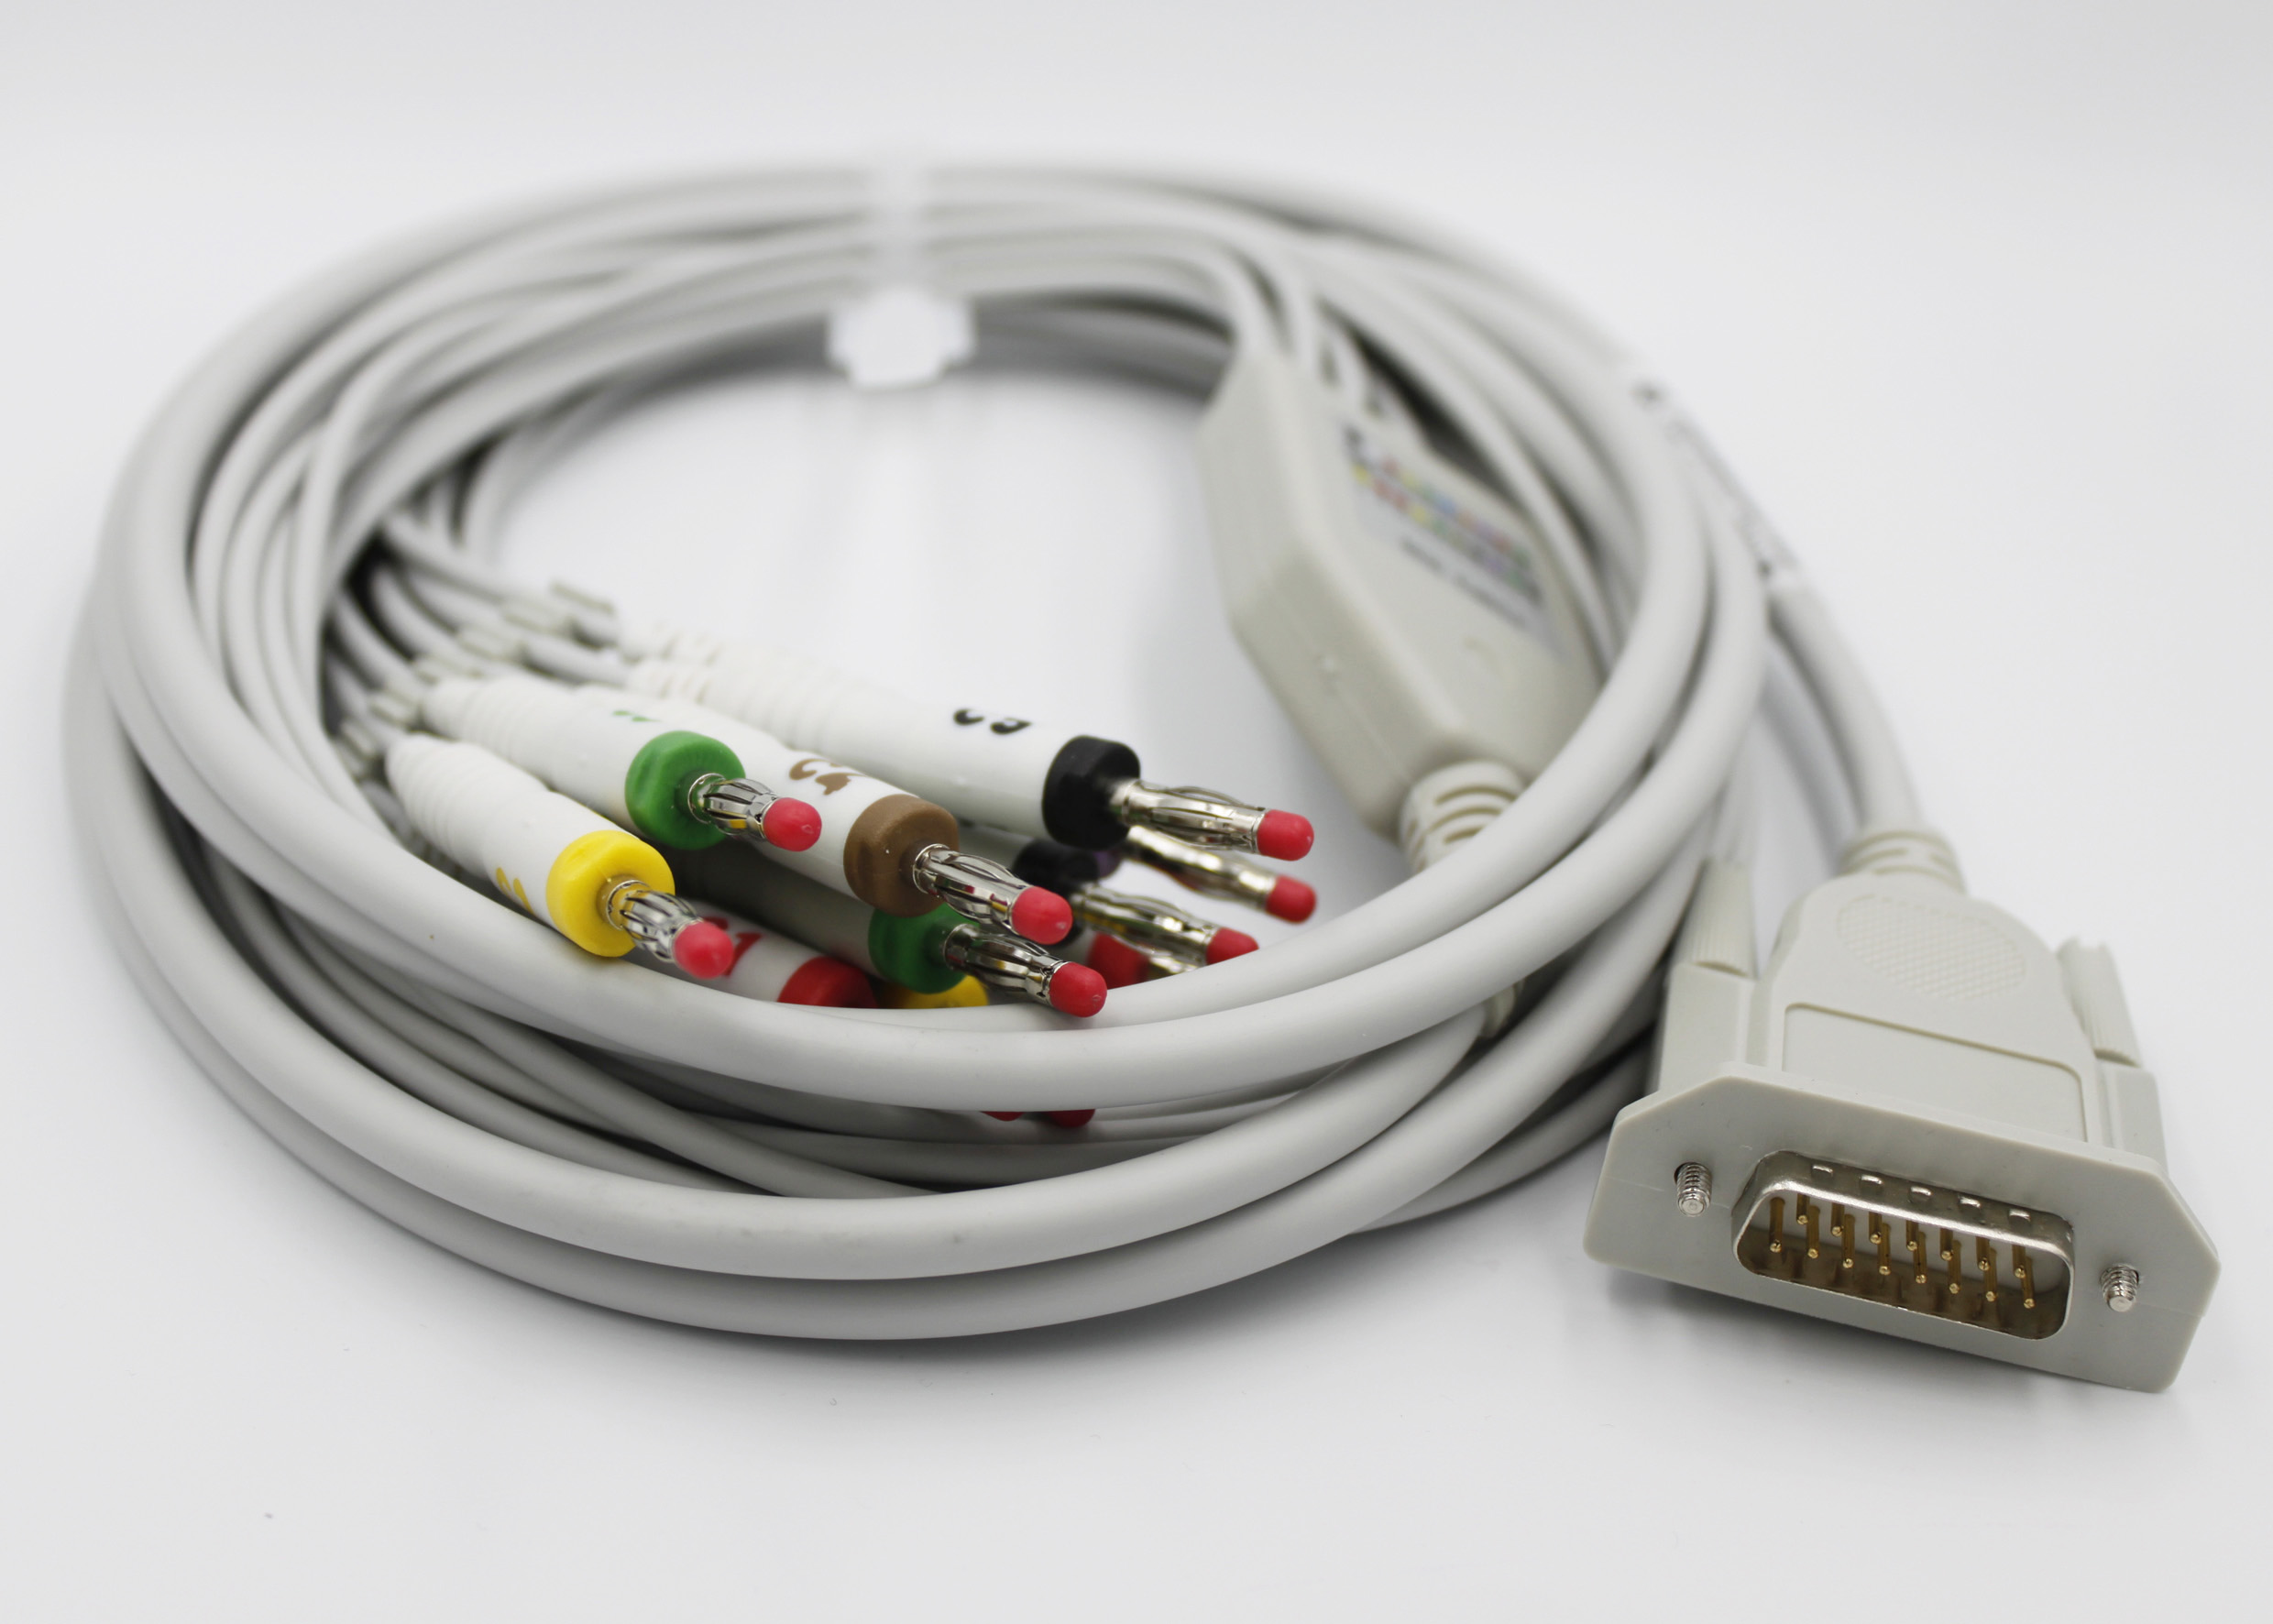 ЭКГ кабель пациента для Contec ECG 80A, 90A, 100G, 300G, 600G, 1200G, штекер banana 4мм, IEC